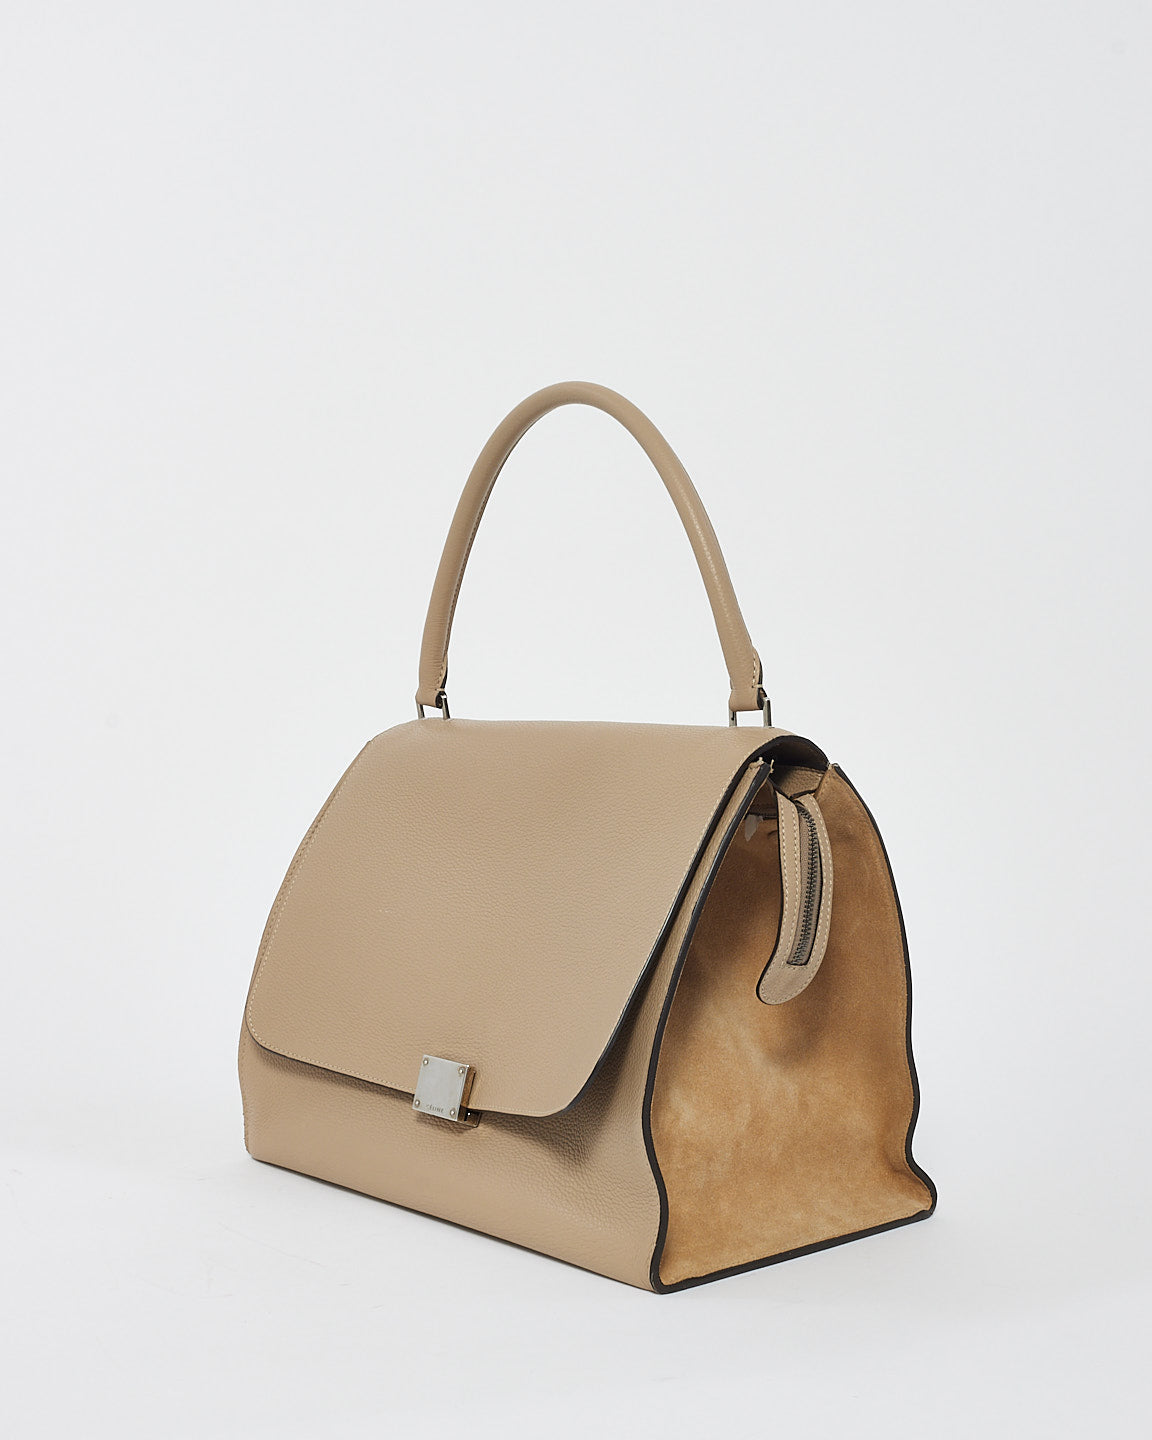 Celine Beige Leather & Suede Medium Trapeze Bag